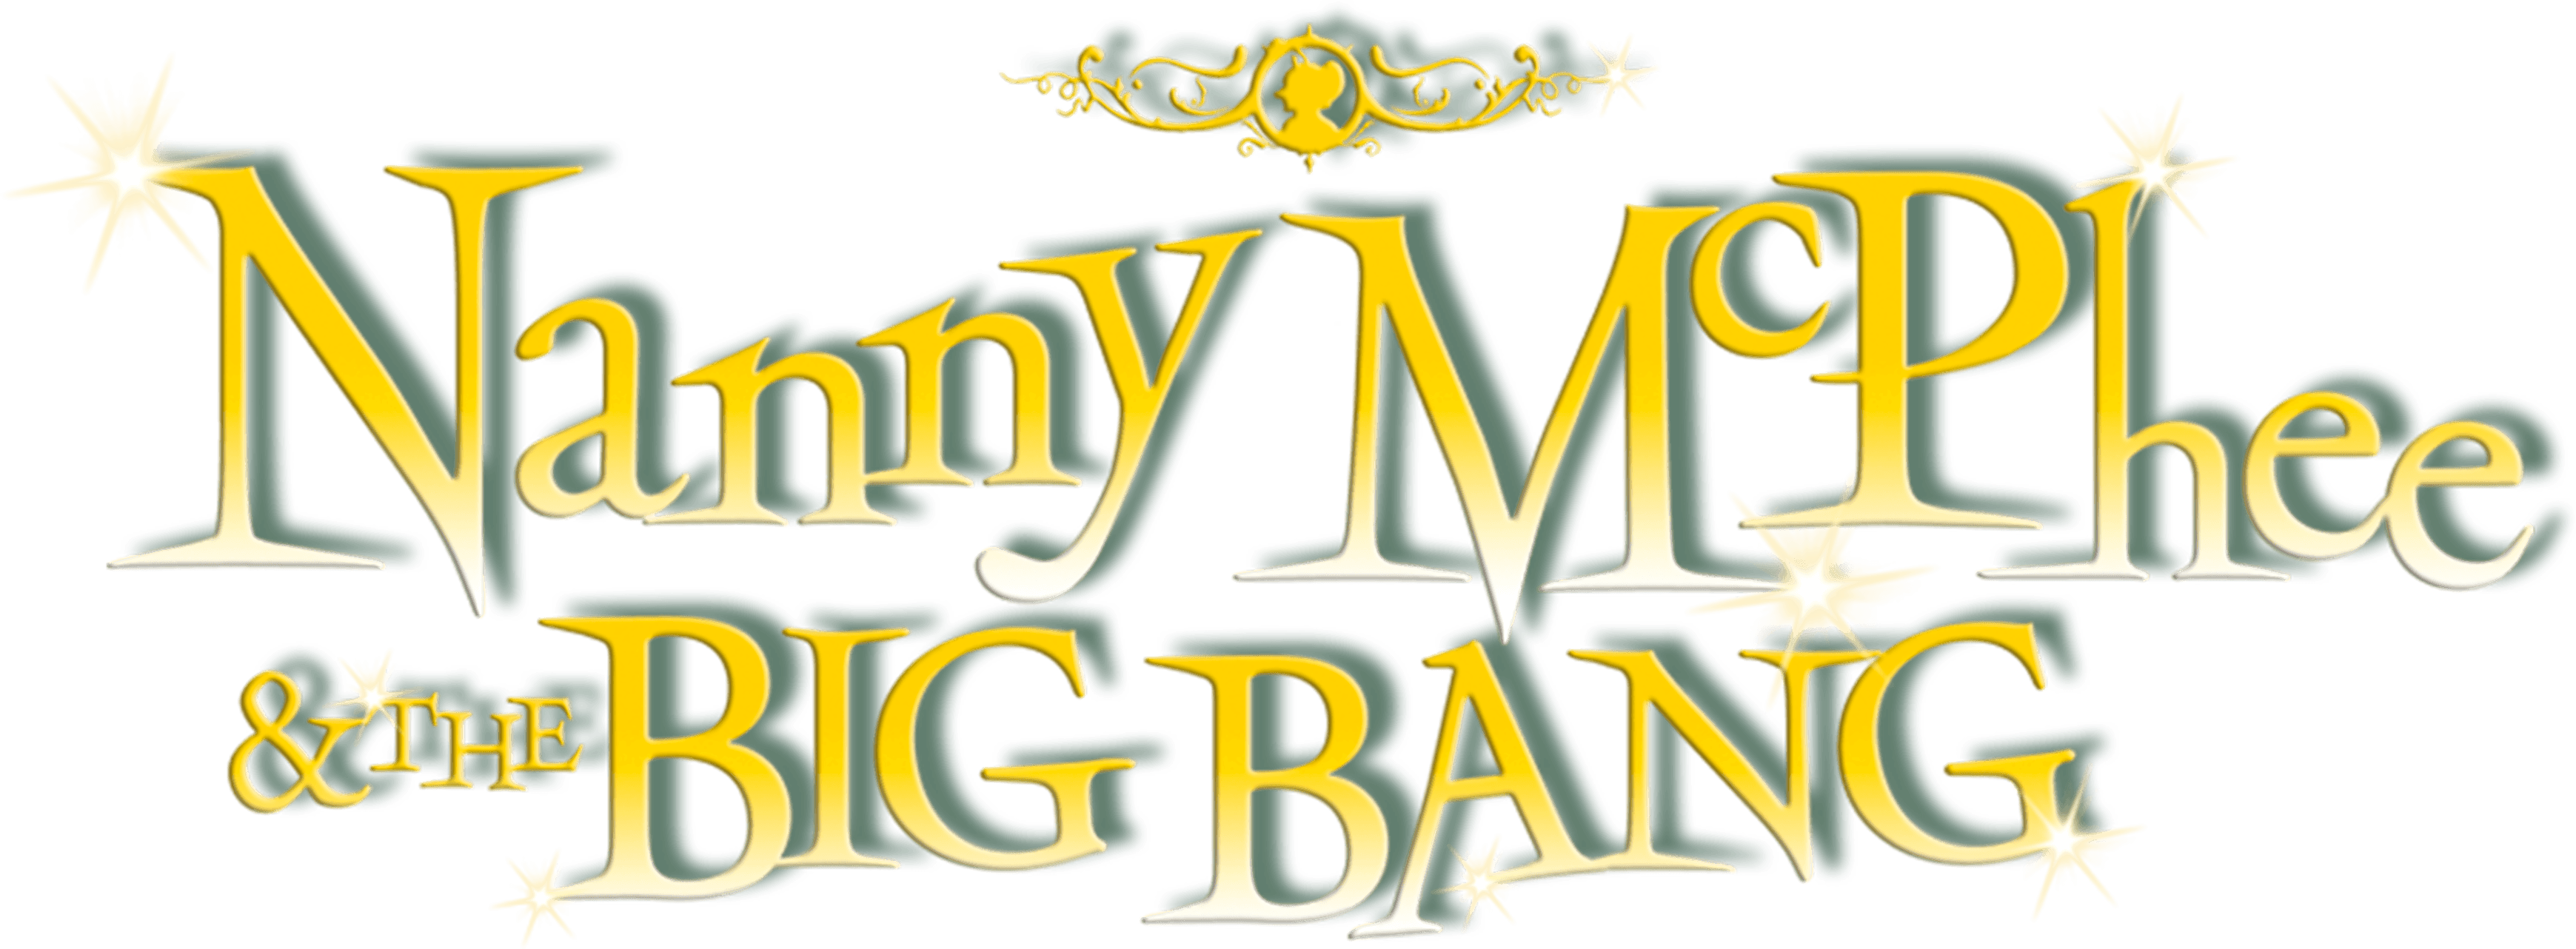 Nanny McPhee and the Big Bang logo